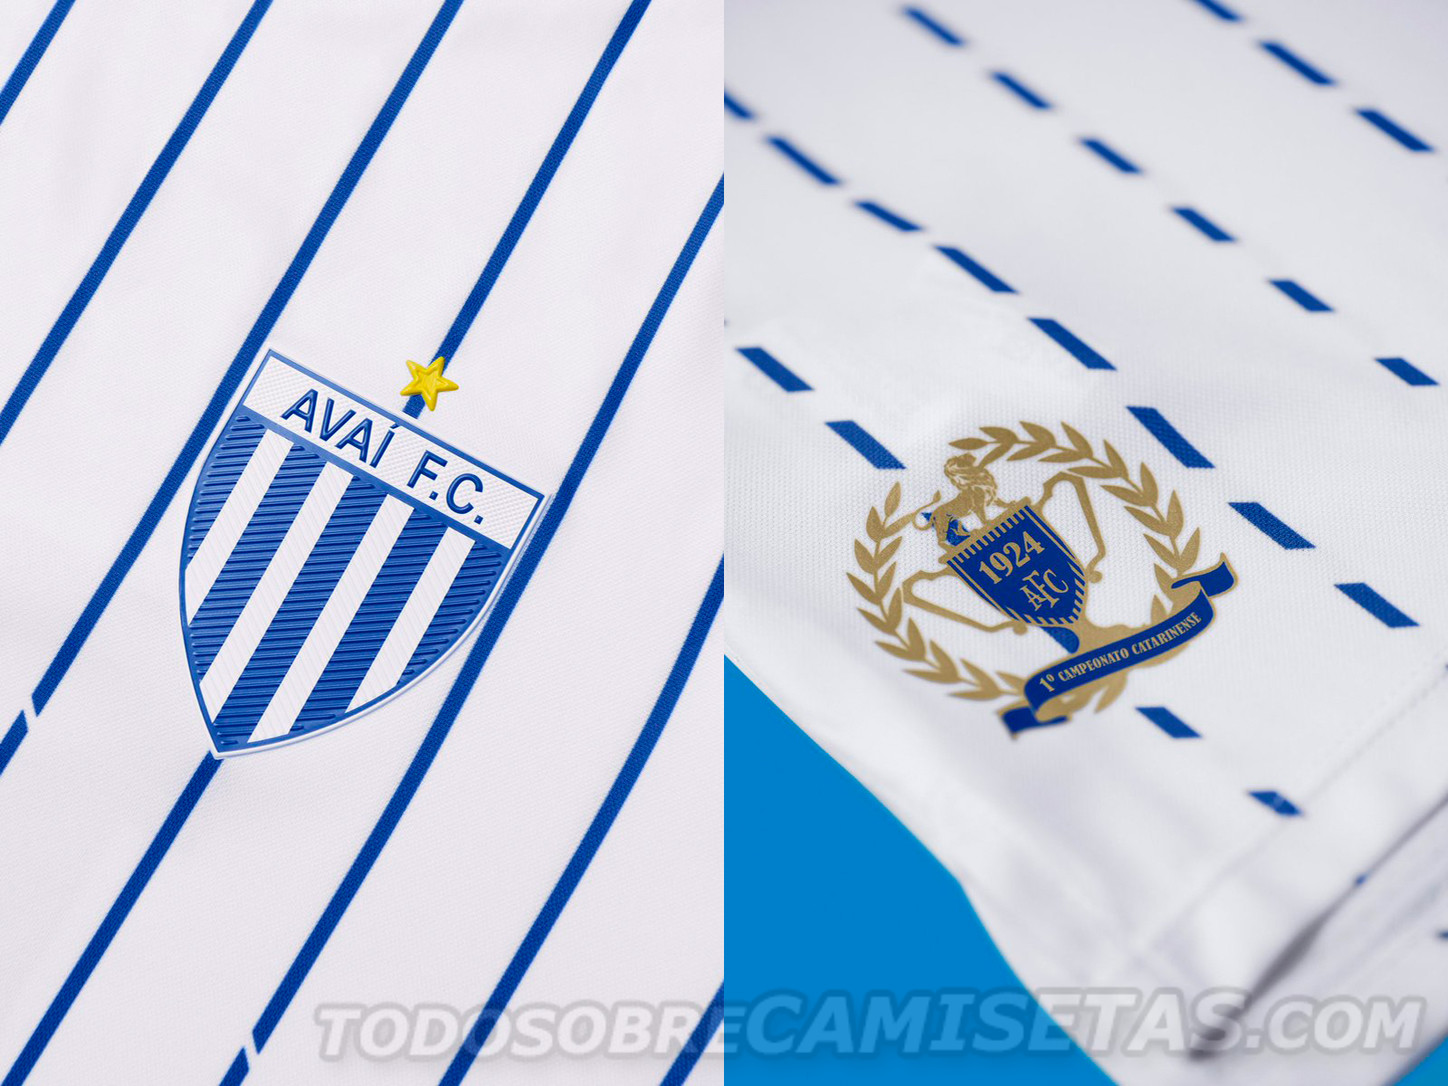 Camisa 2 Umbro do Avaí FC 2019